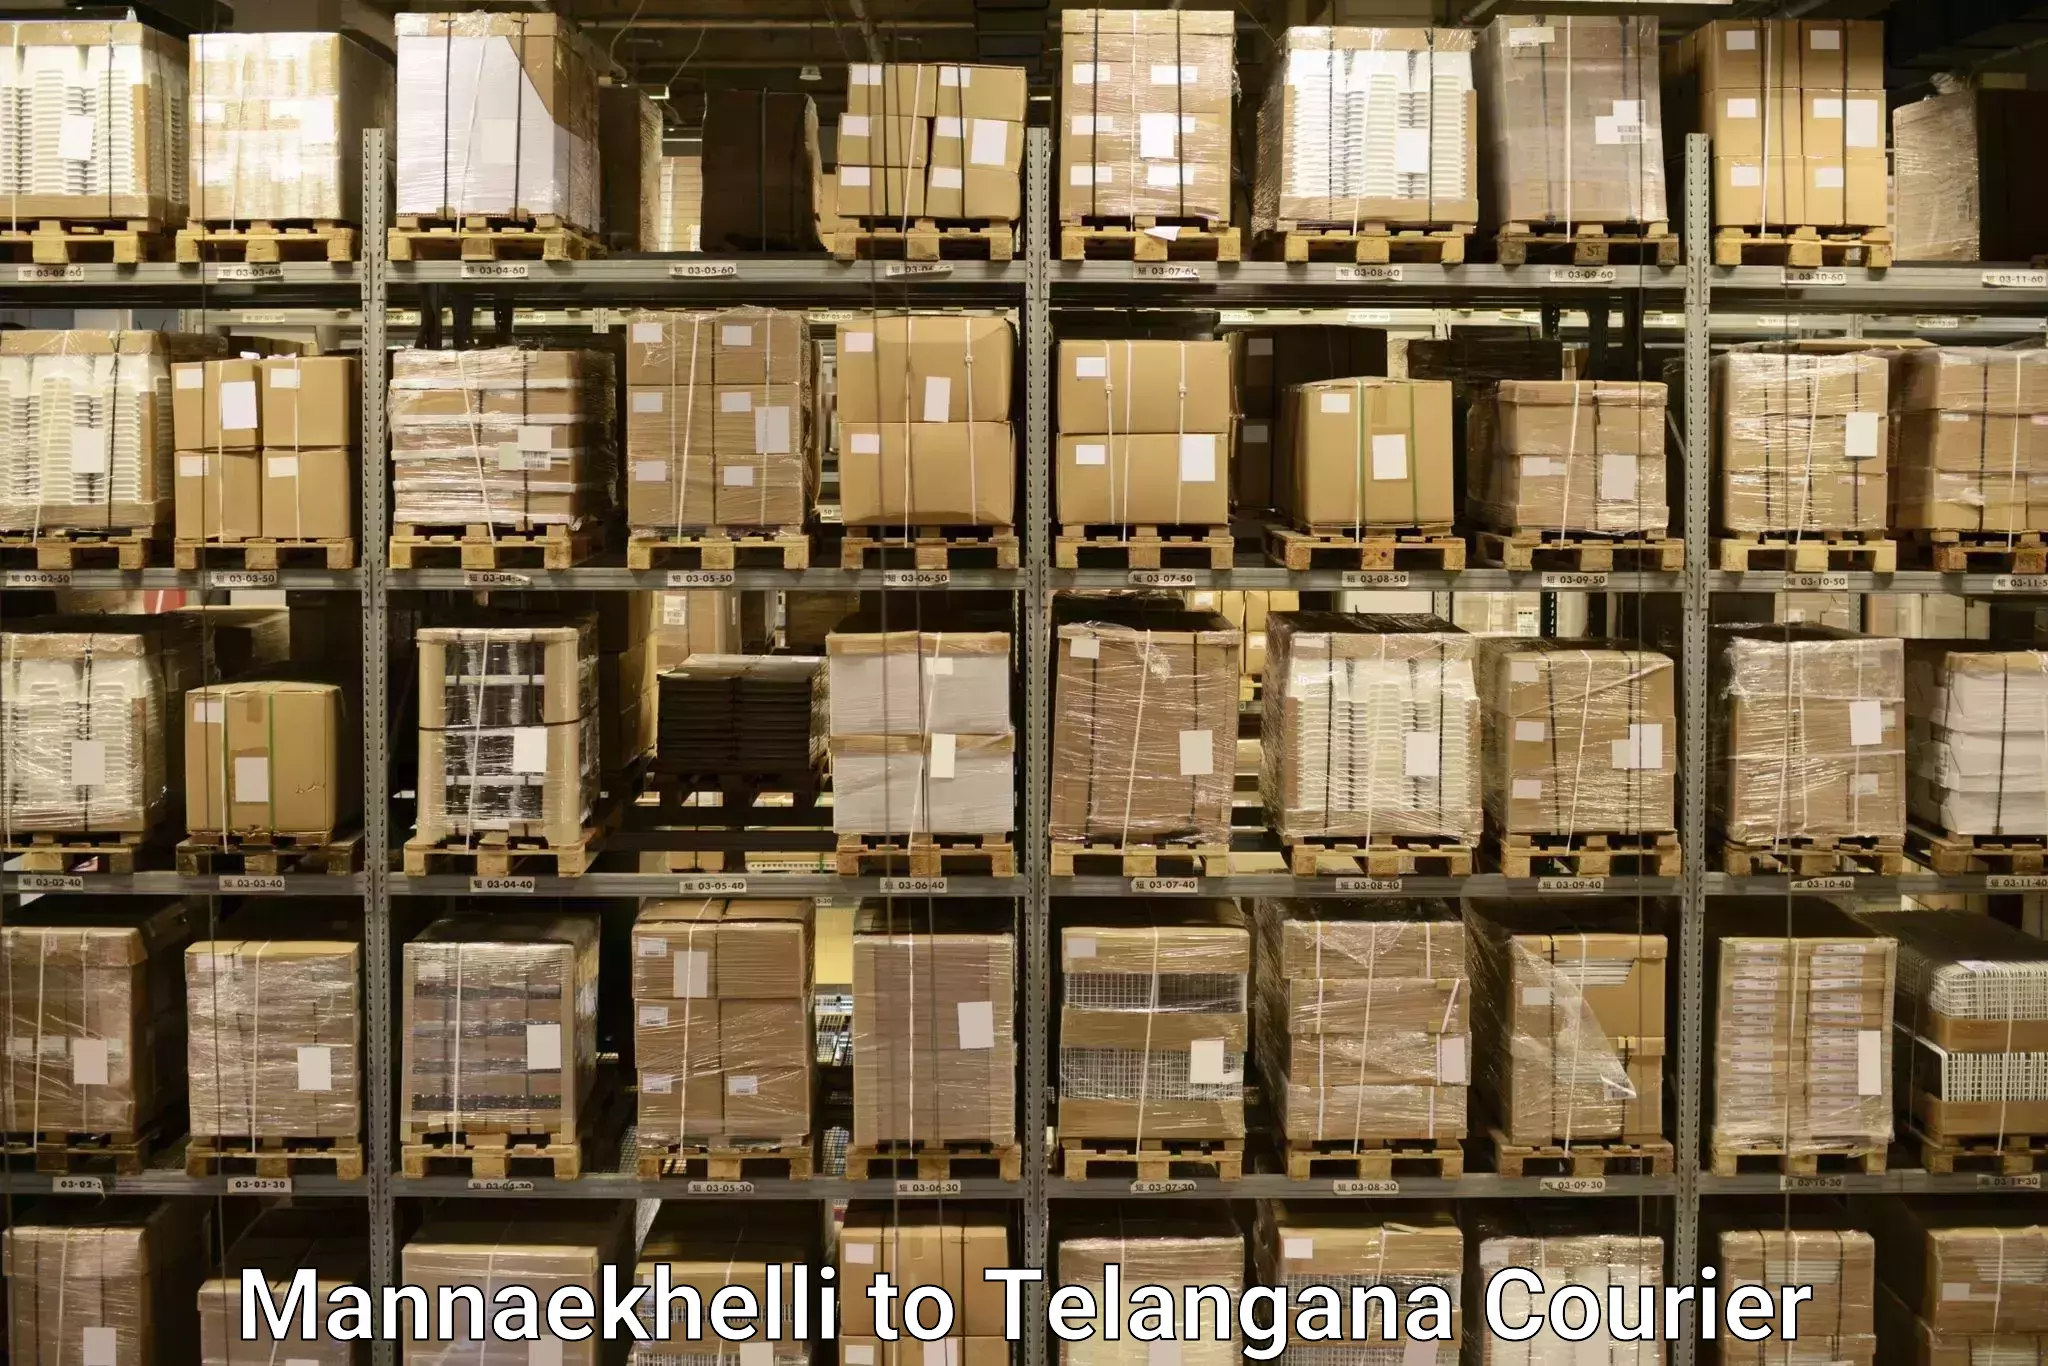 Luggage delivery operations Mannaekhelli to Koratla